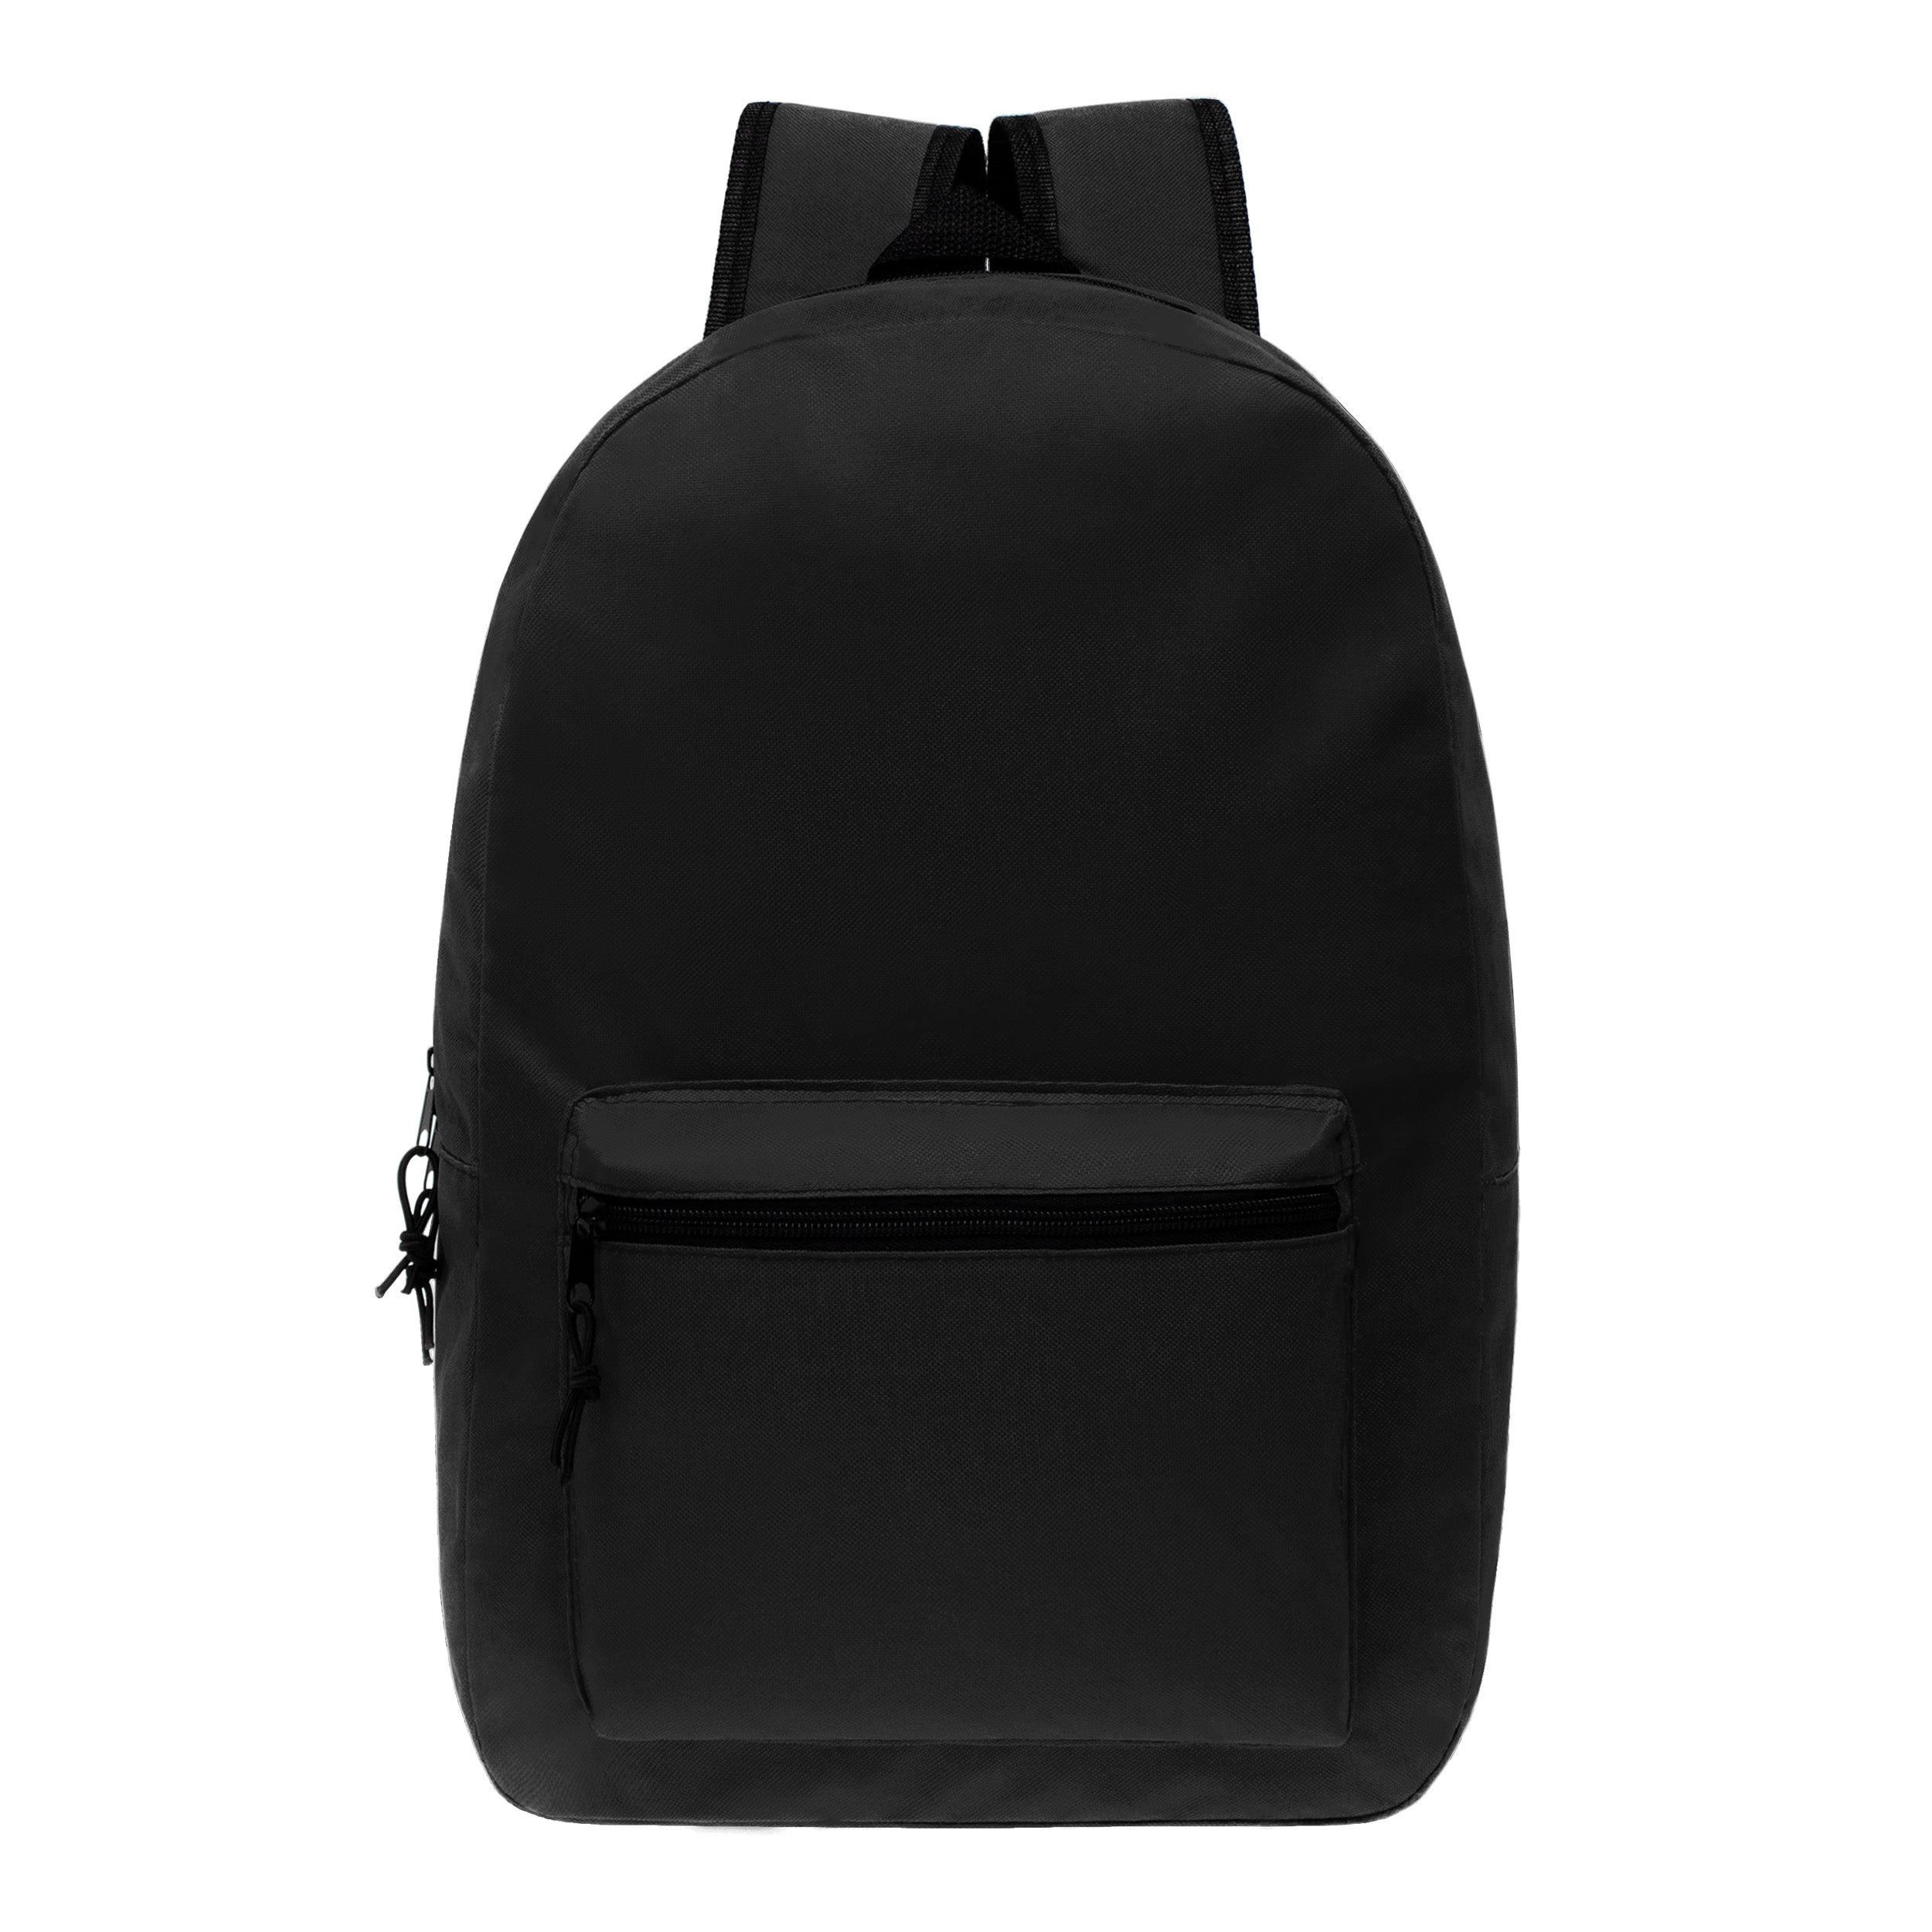 19 inch black wholesale bookbag in bulk